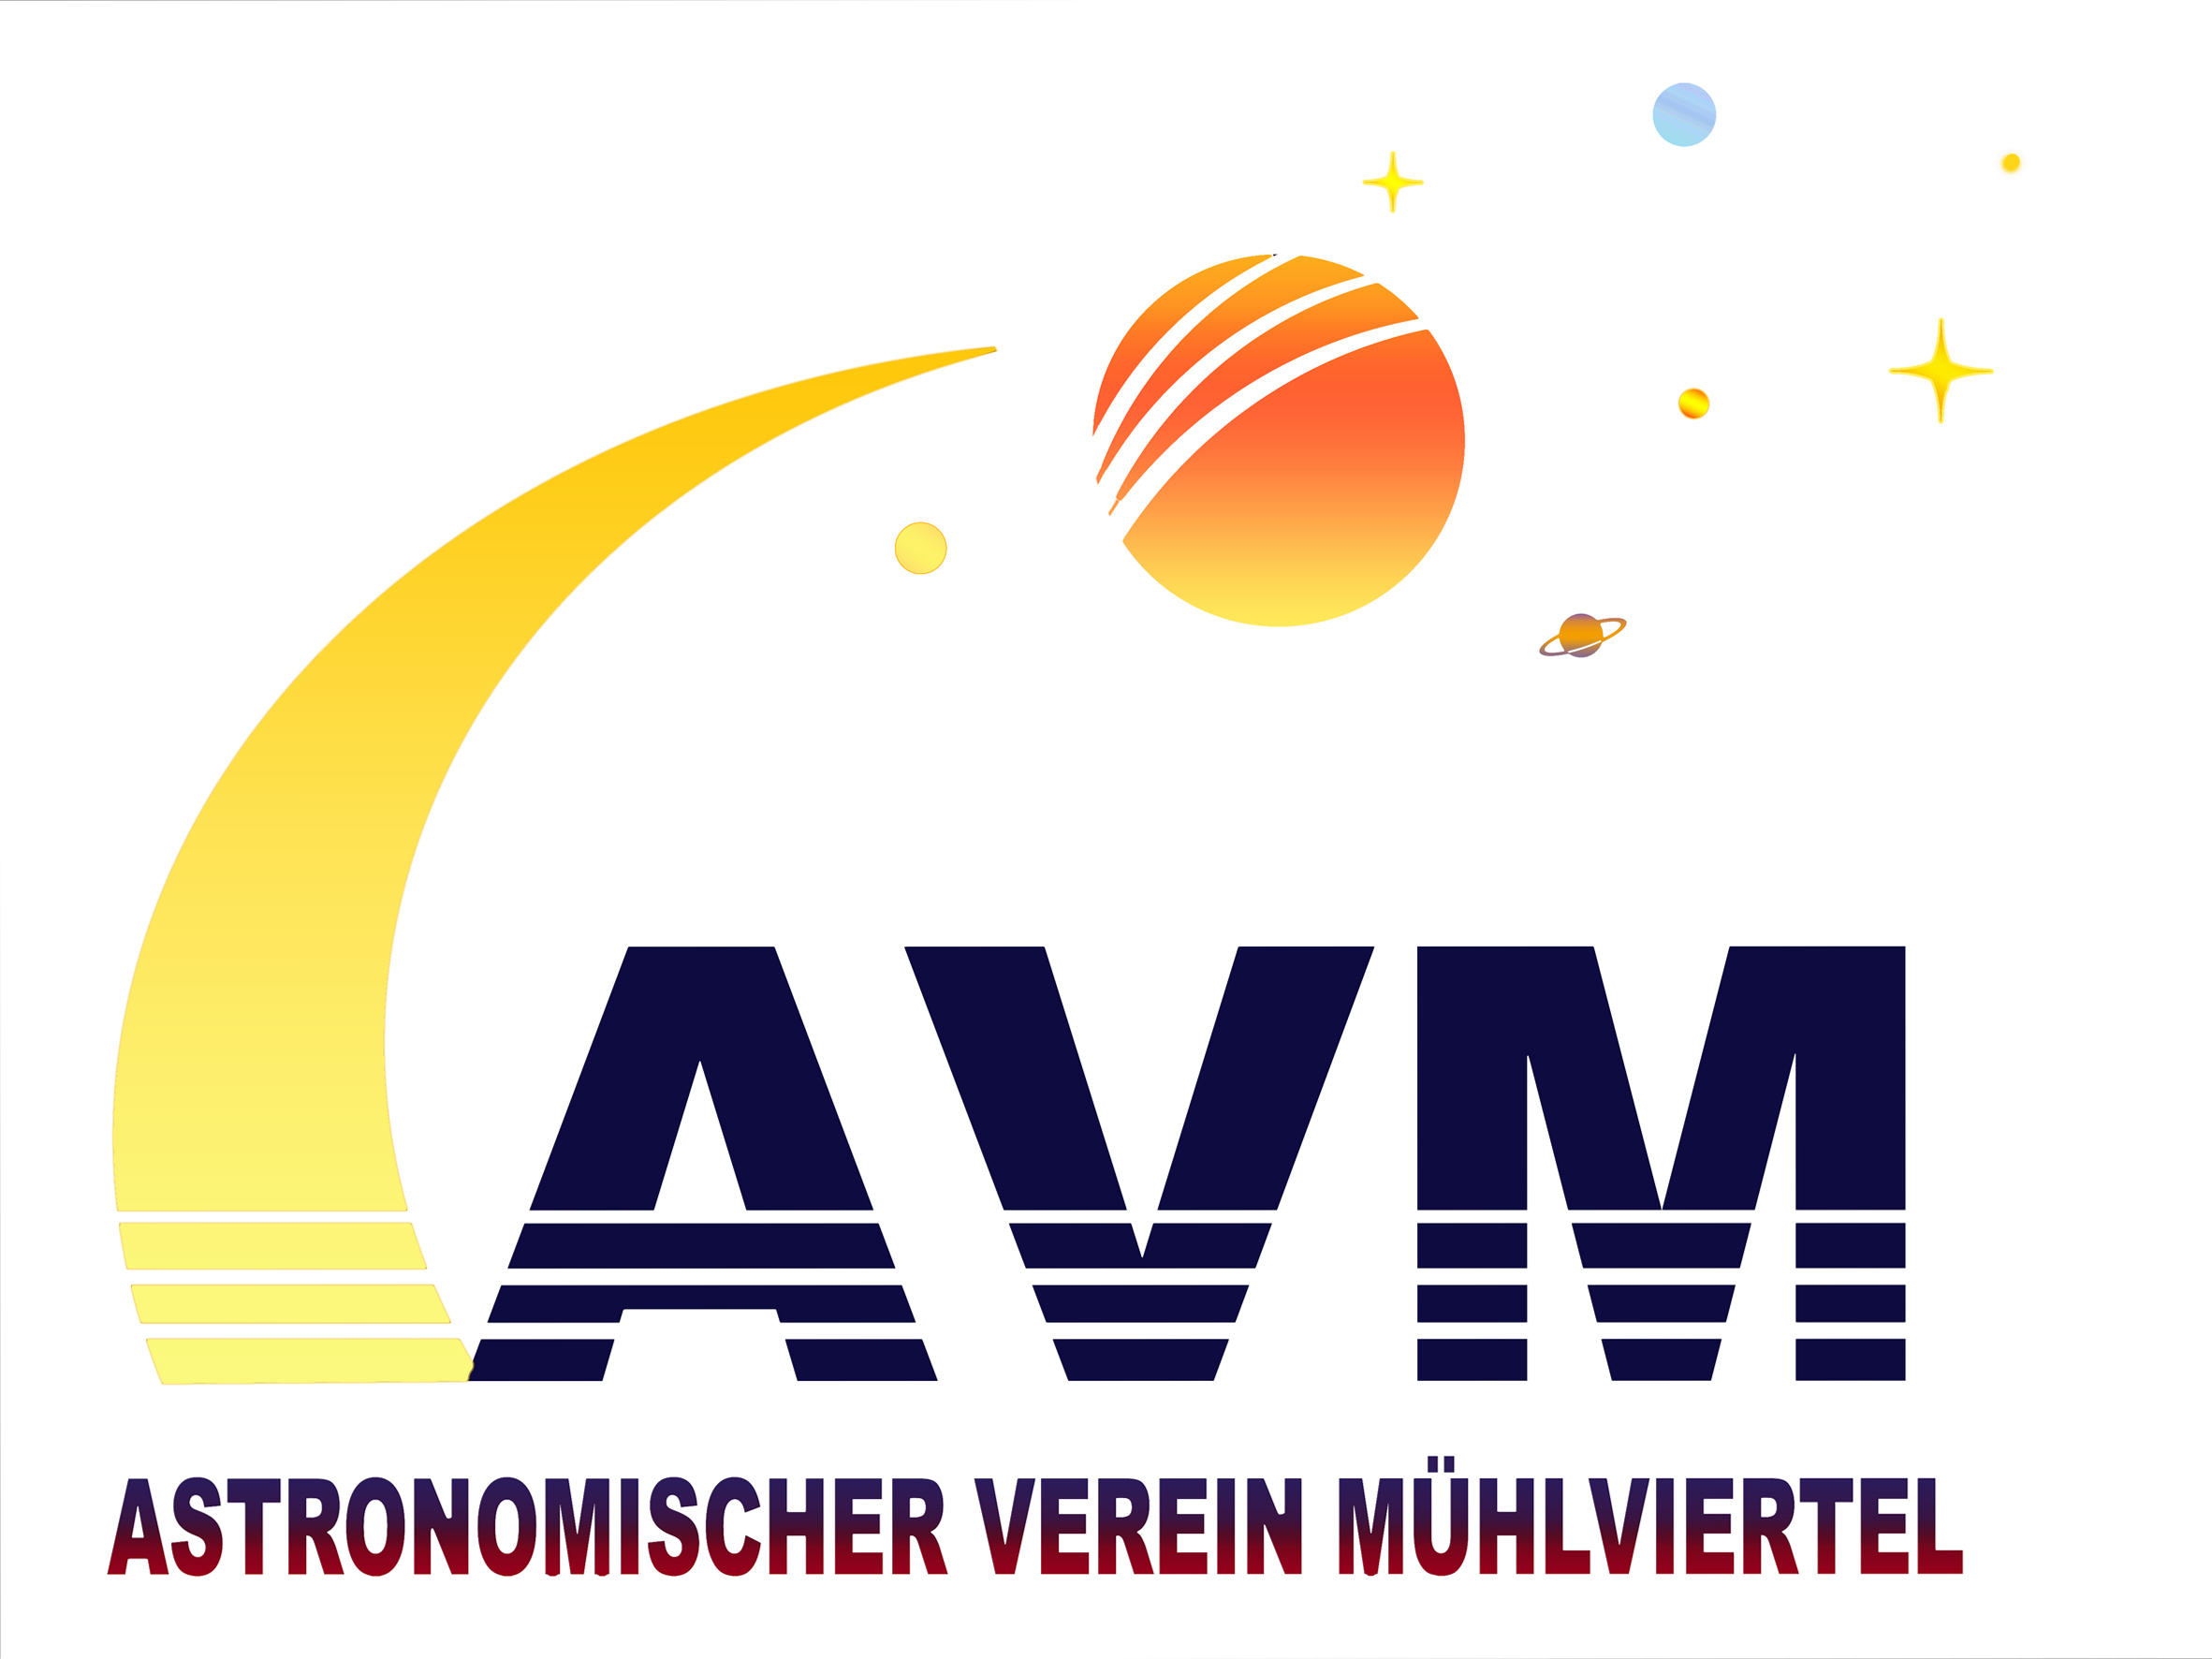 Astronomischer Vereins Mühlviertel (AVM)